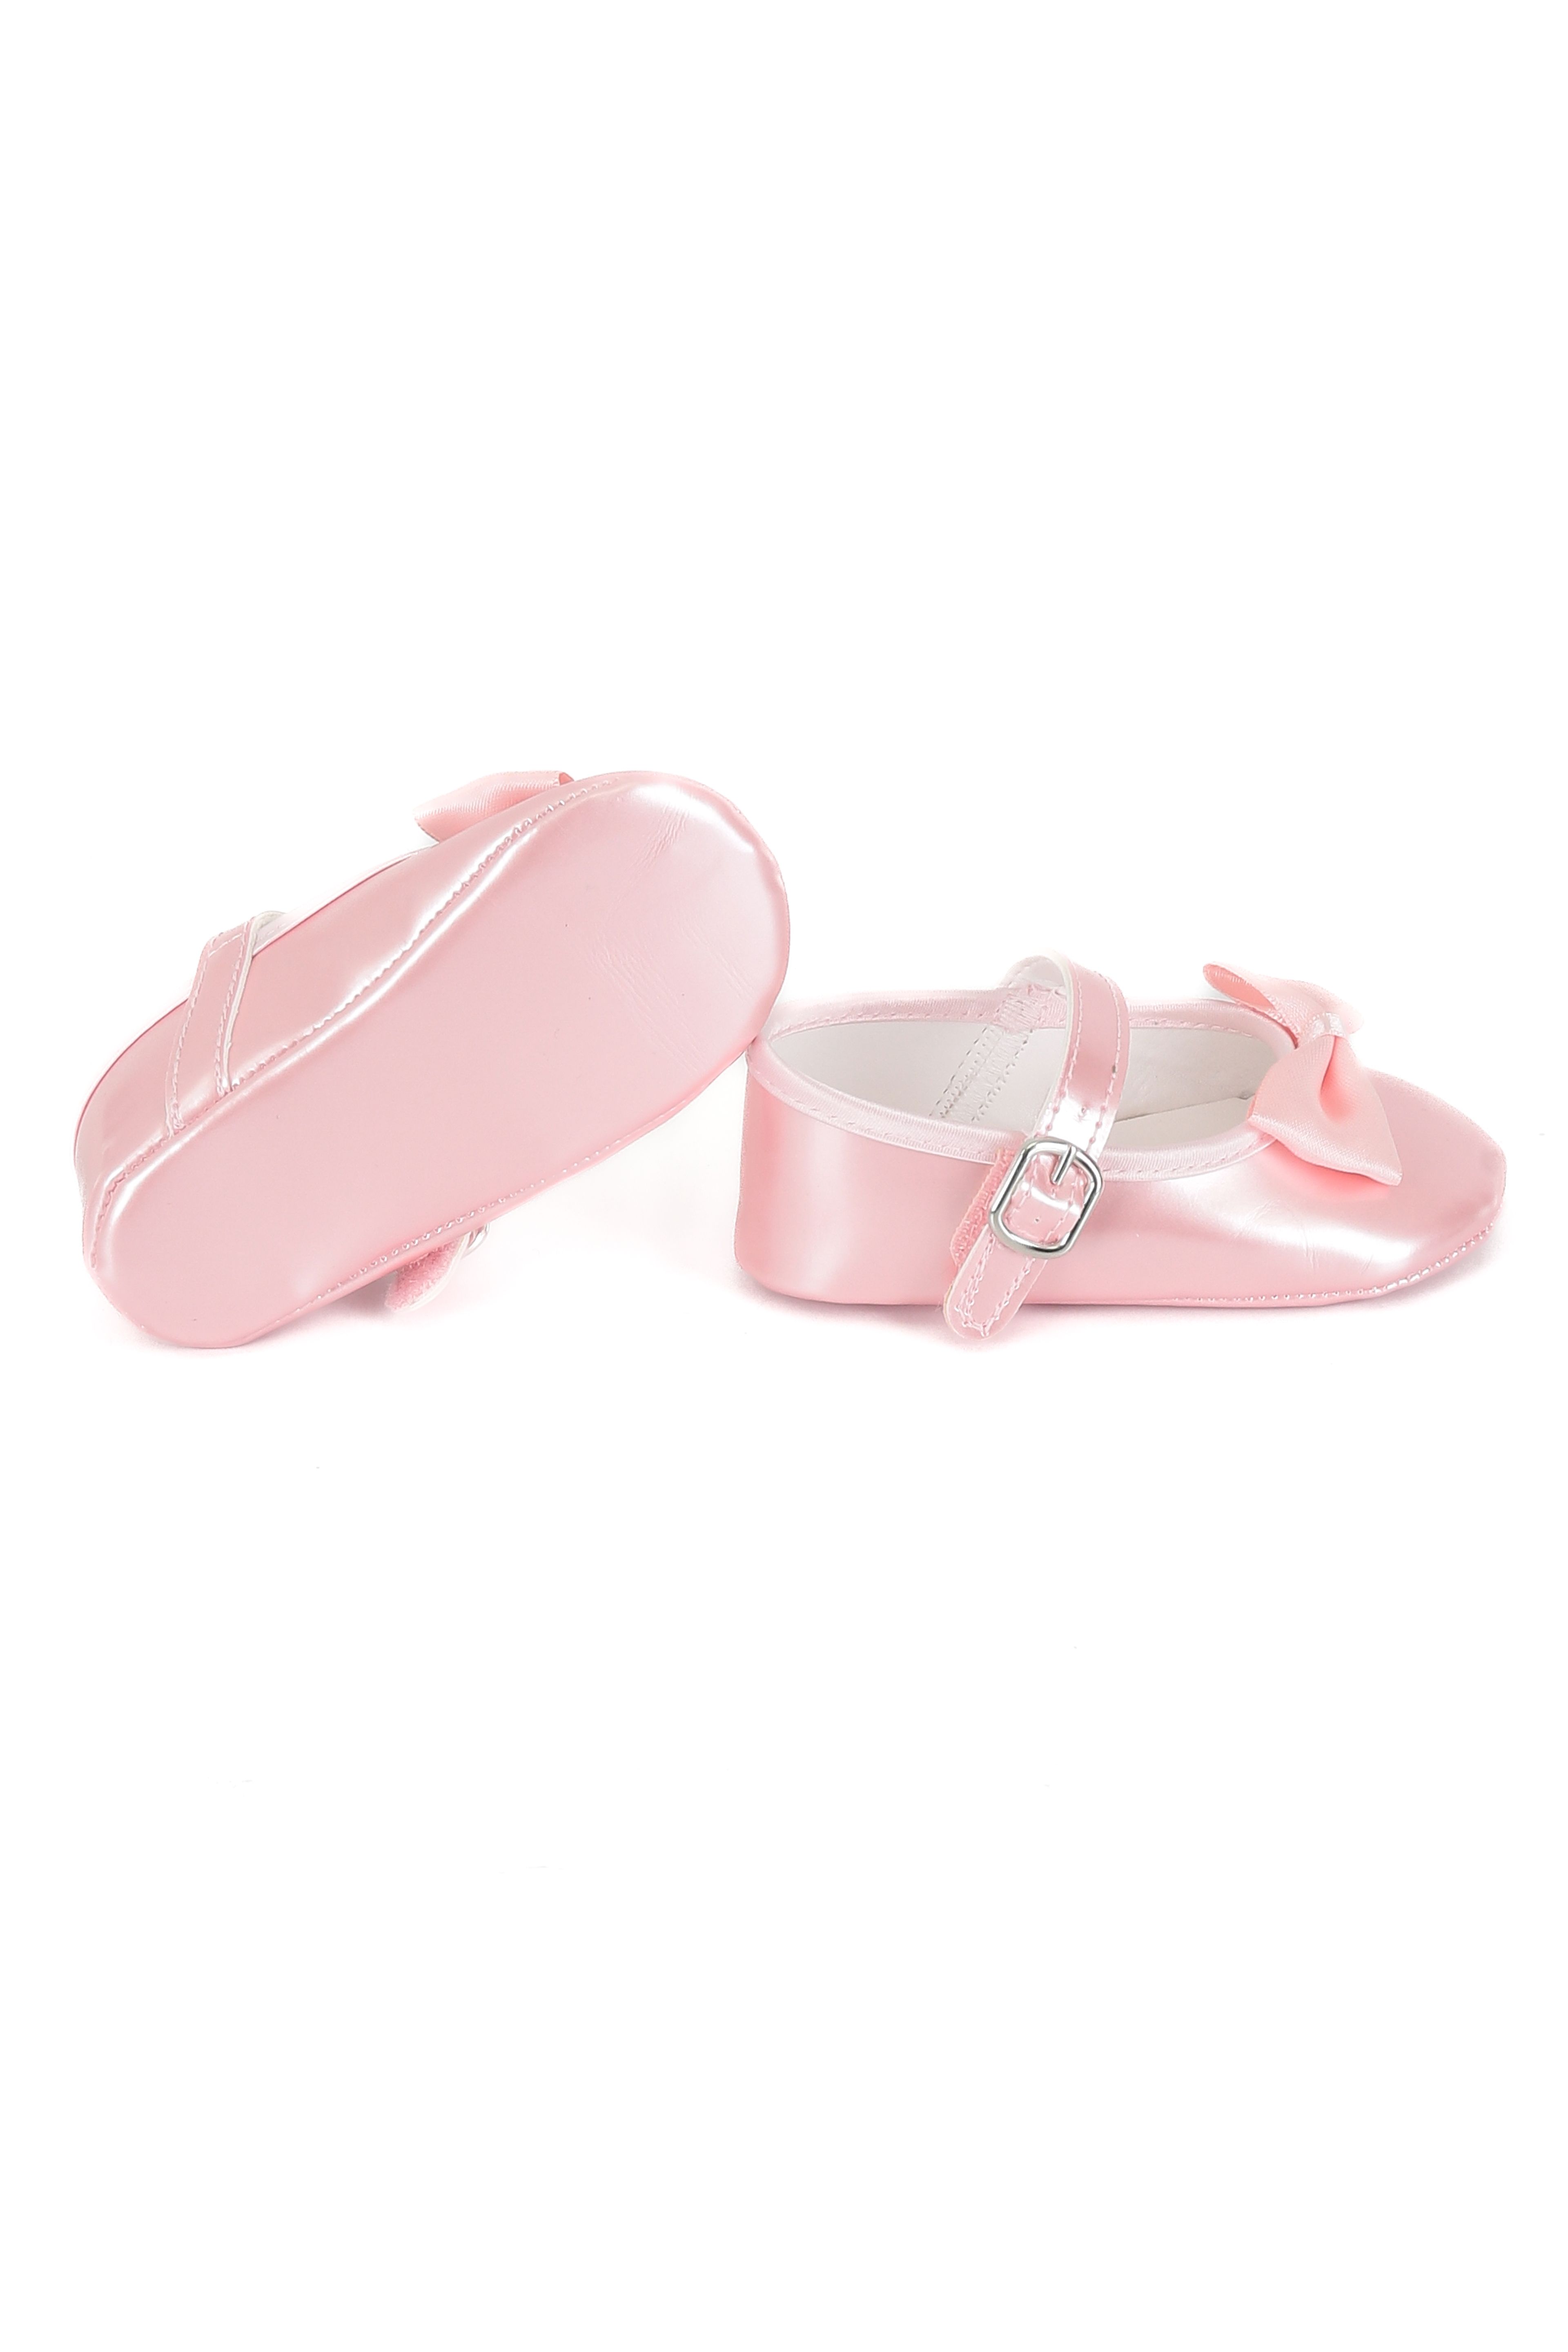 Kız Bebek Babet Ayakkabı - Pembe